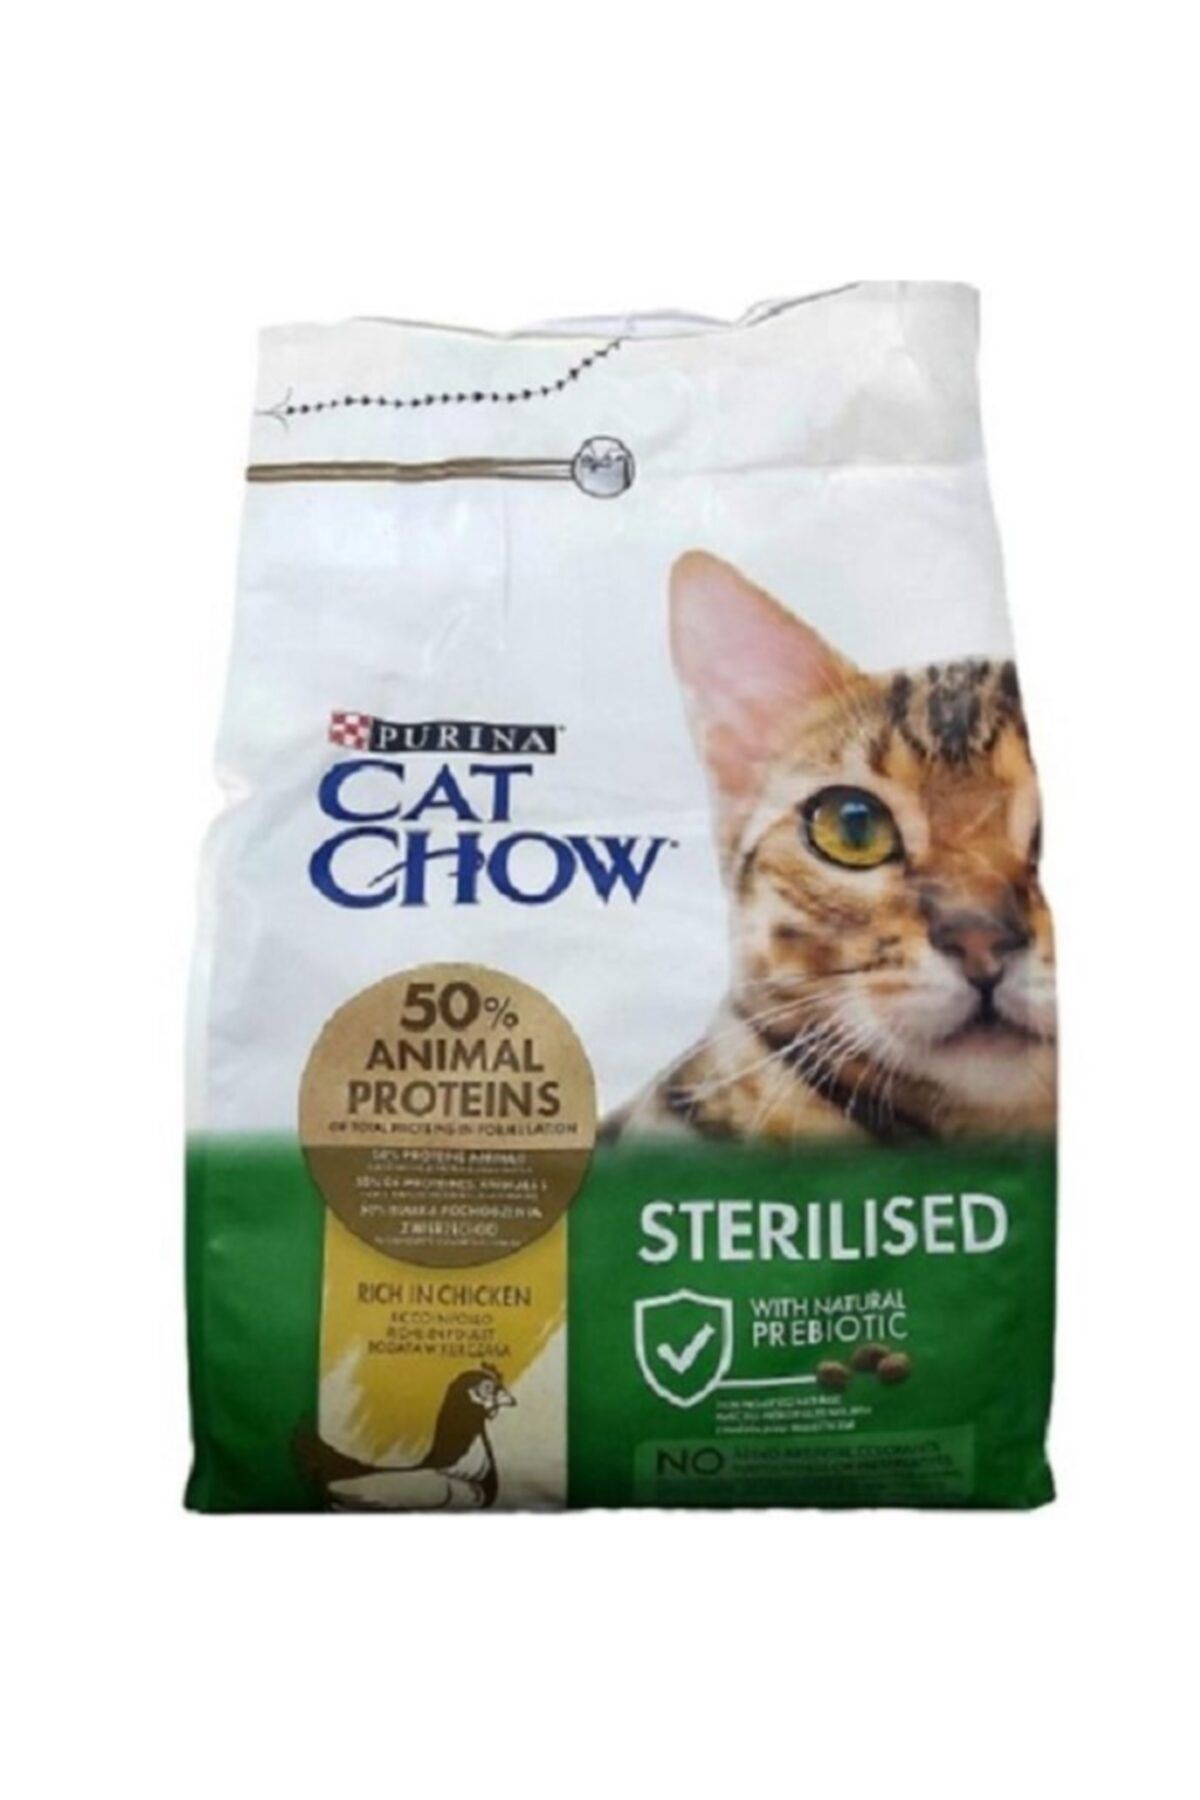 Cat Chow Purına Cat Chow Sterılısed - Kısırlaştırılmış Tavuklu Yetişkin Kedi Maması 3 Kg